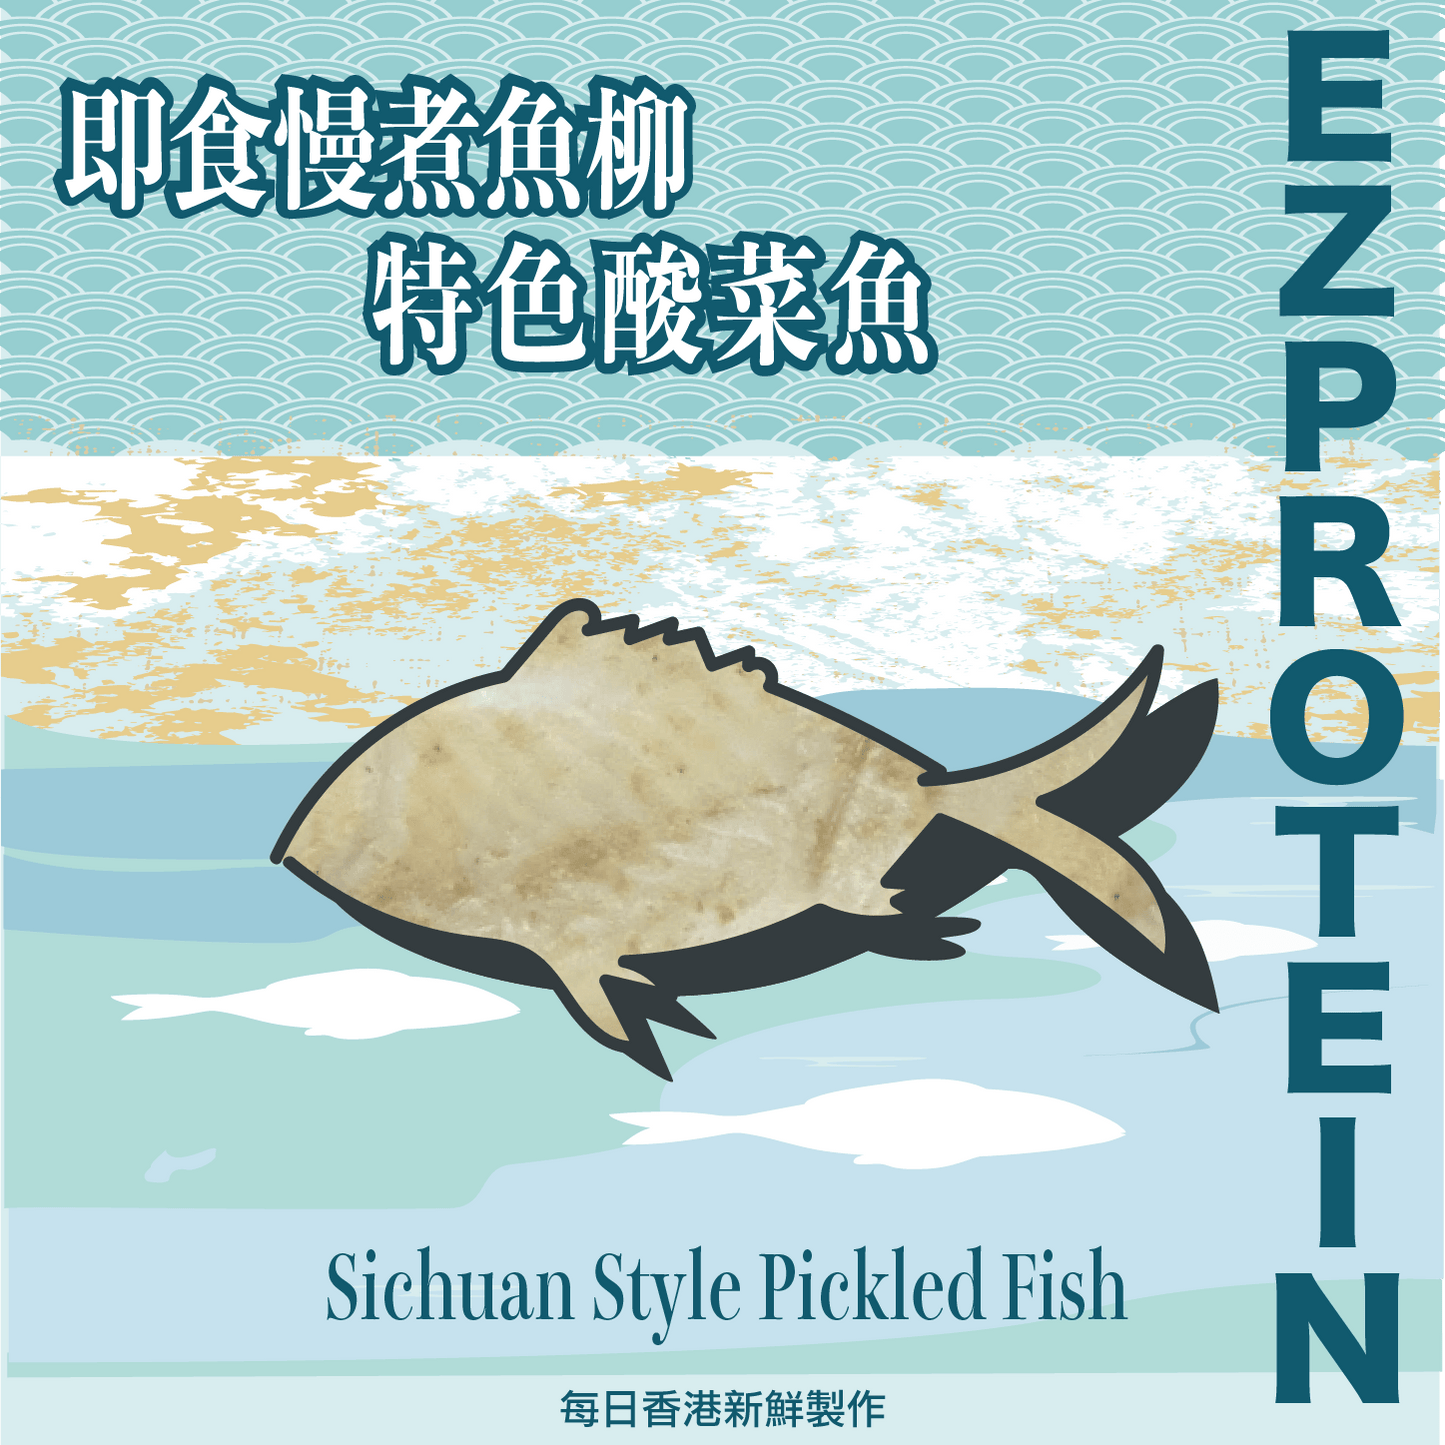 EZ PROTEIN 特色酸菜魚柳｜Sichuan Style Pickled Fish - #heachicken#